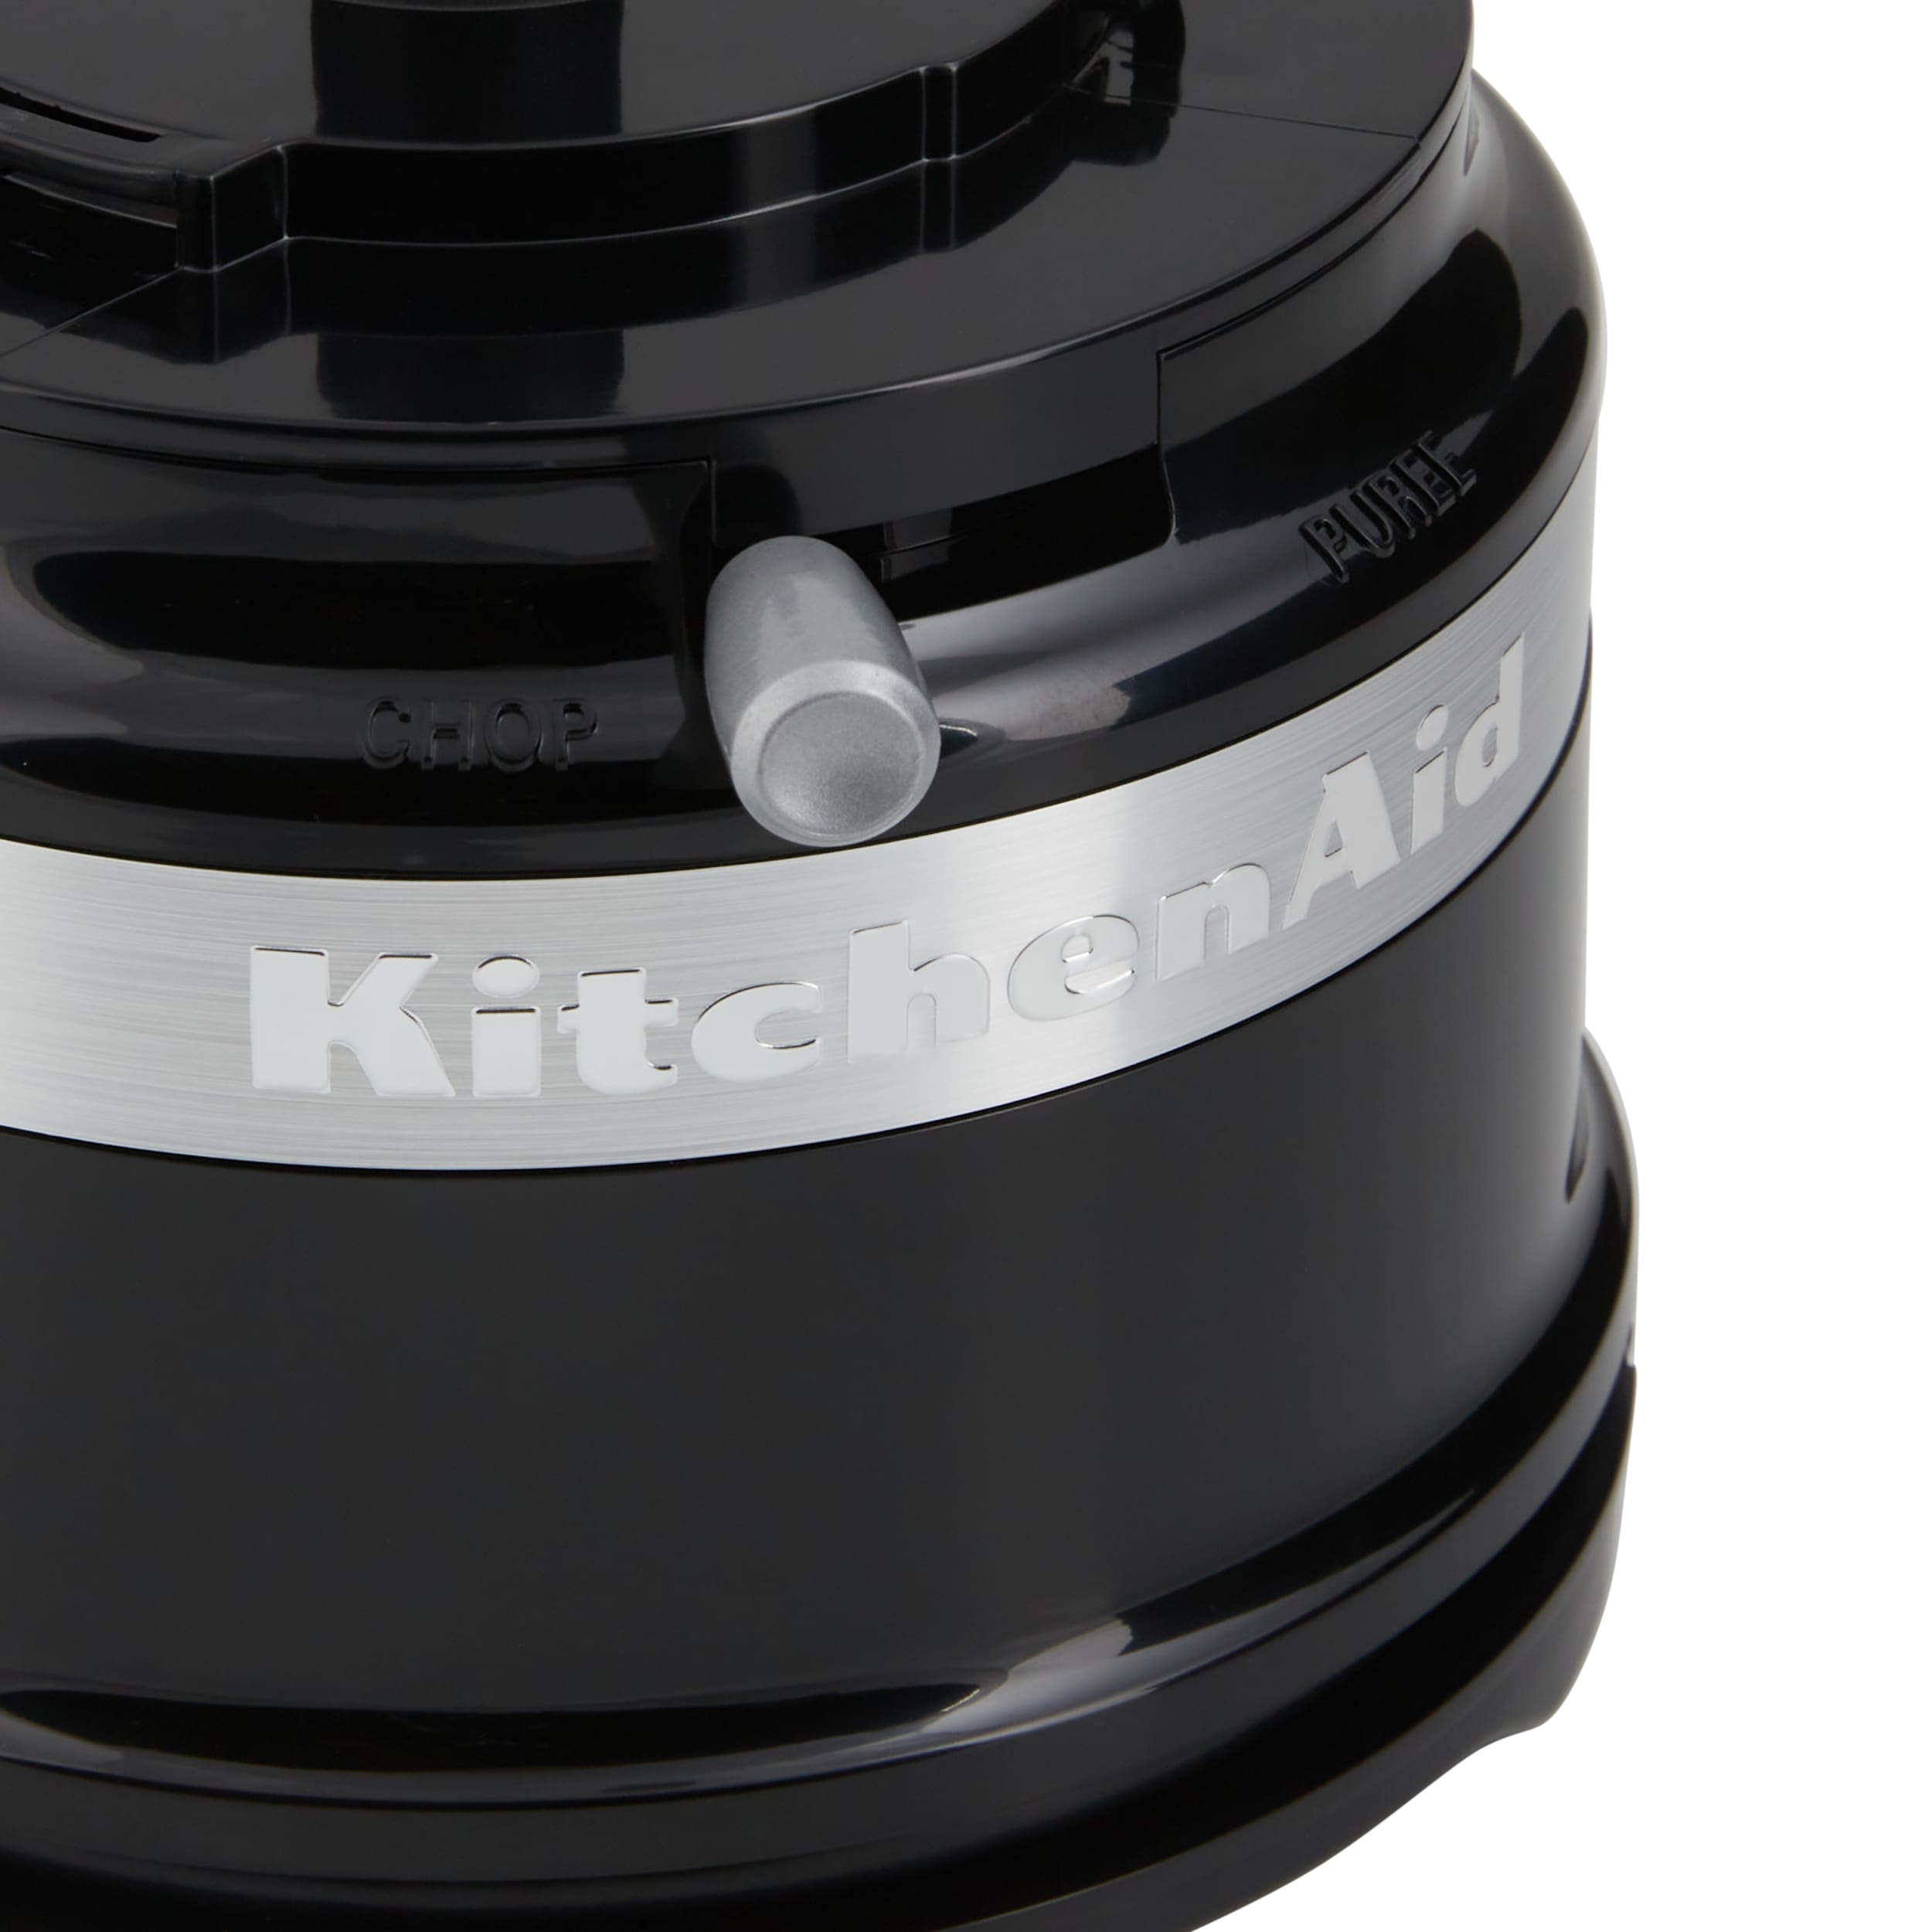 KitchenAid KFC3516OB 3.5 Cup Mini Food Processor - Onyx Black